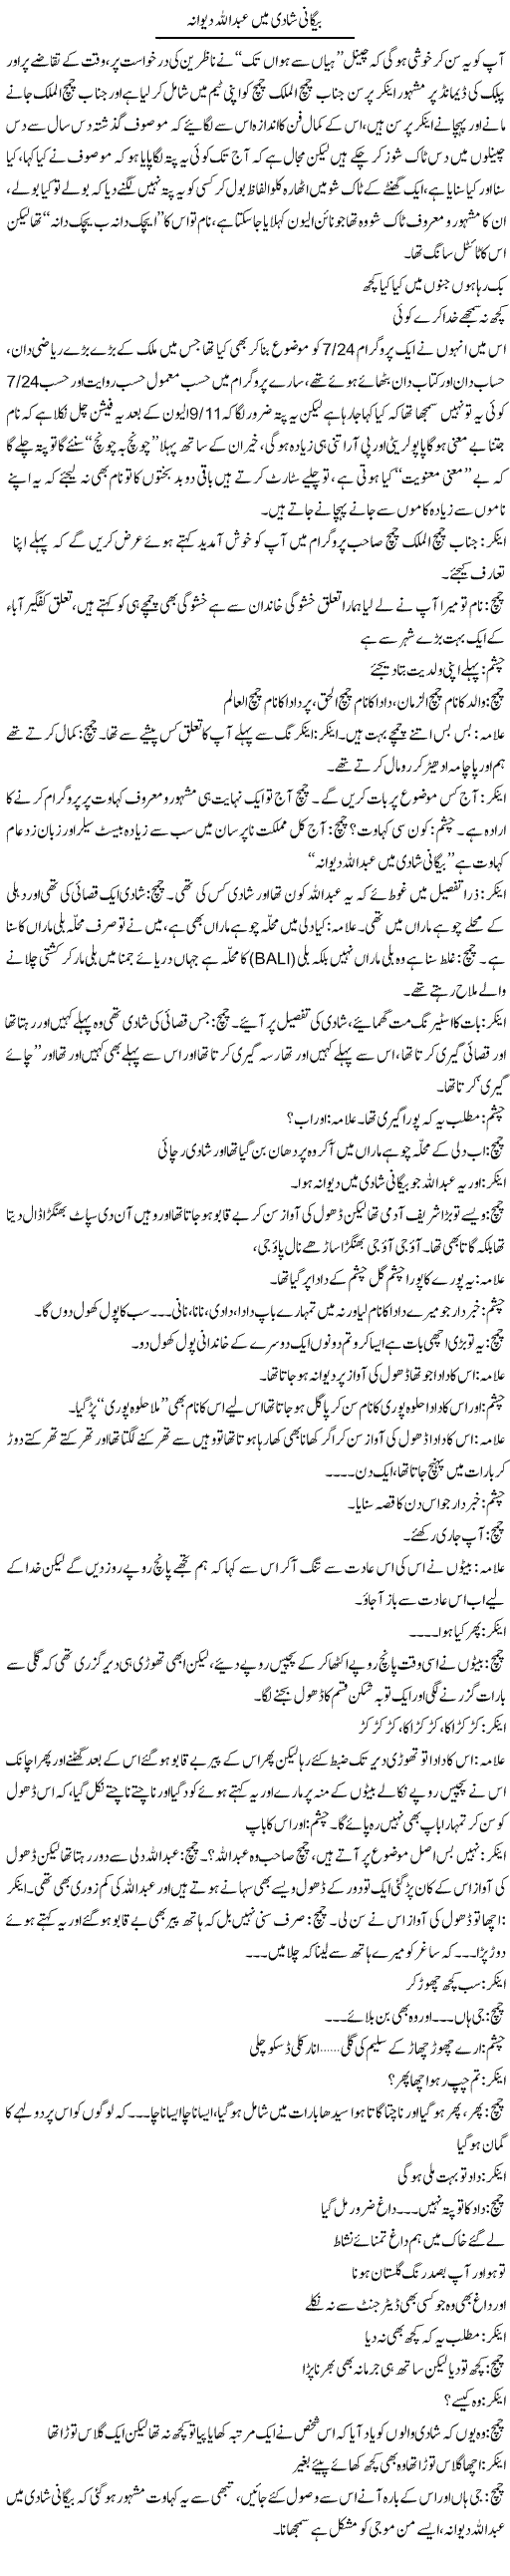 Begani Shadi Main Abdullah Dewana | Saad Ullah Jan Barq | Daily Urdu Columns